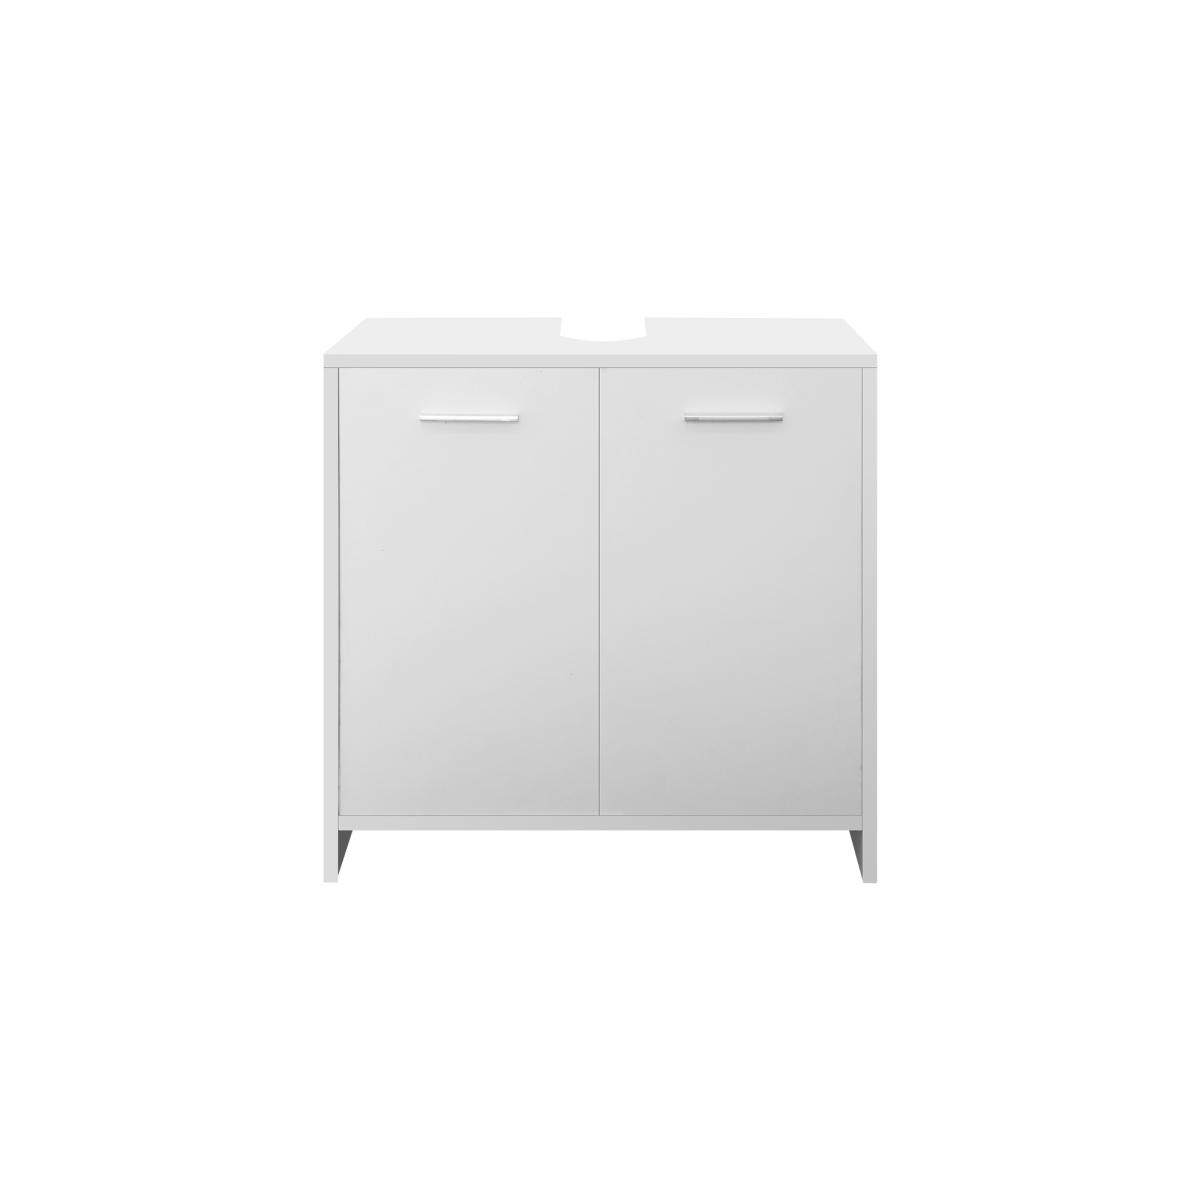 ml design modern living meuble sous lavabo blanc armoire bas 2 portes 1 espace rangement 58x60x33 cm  blanc